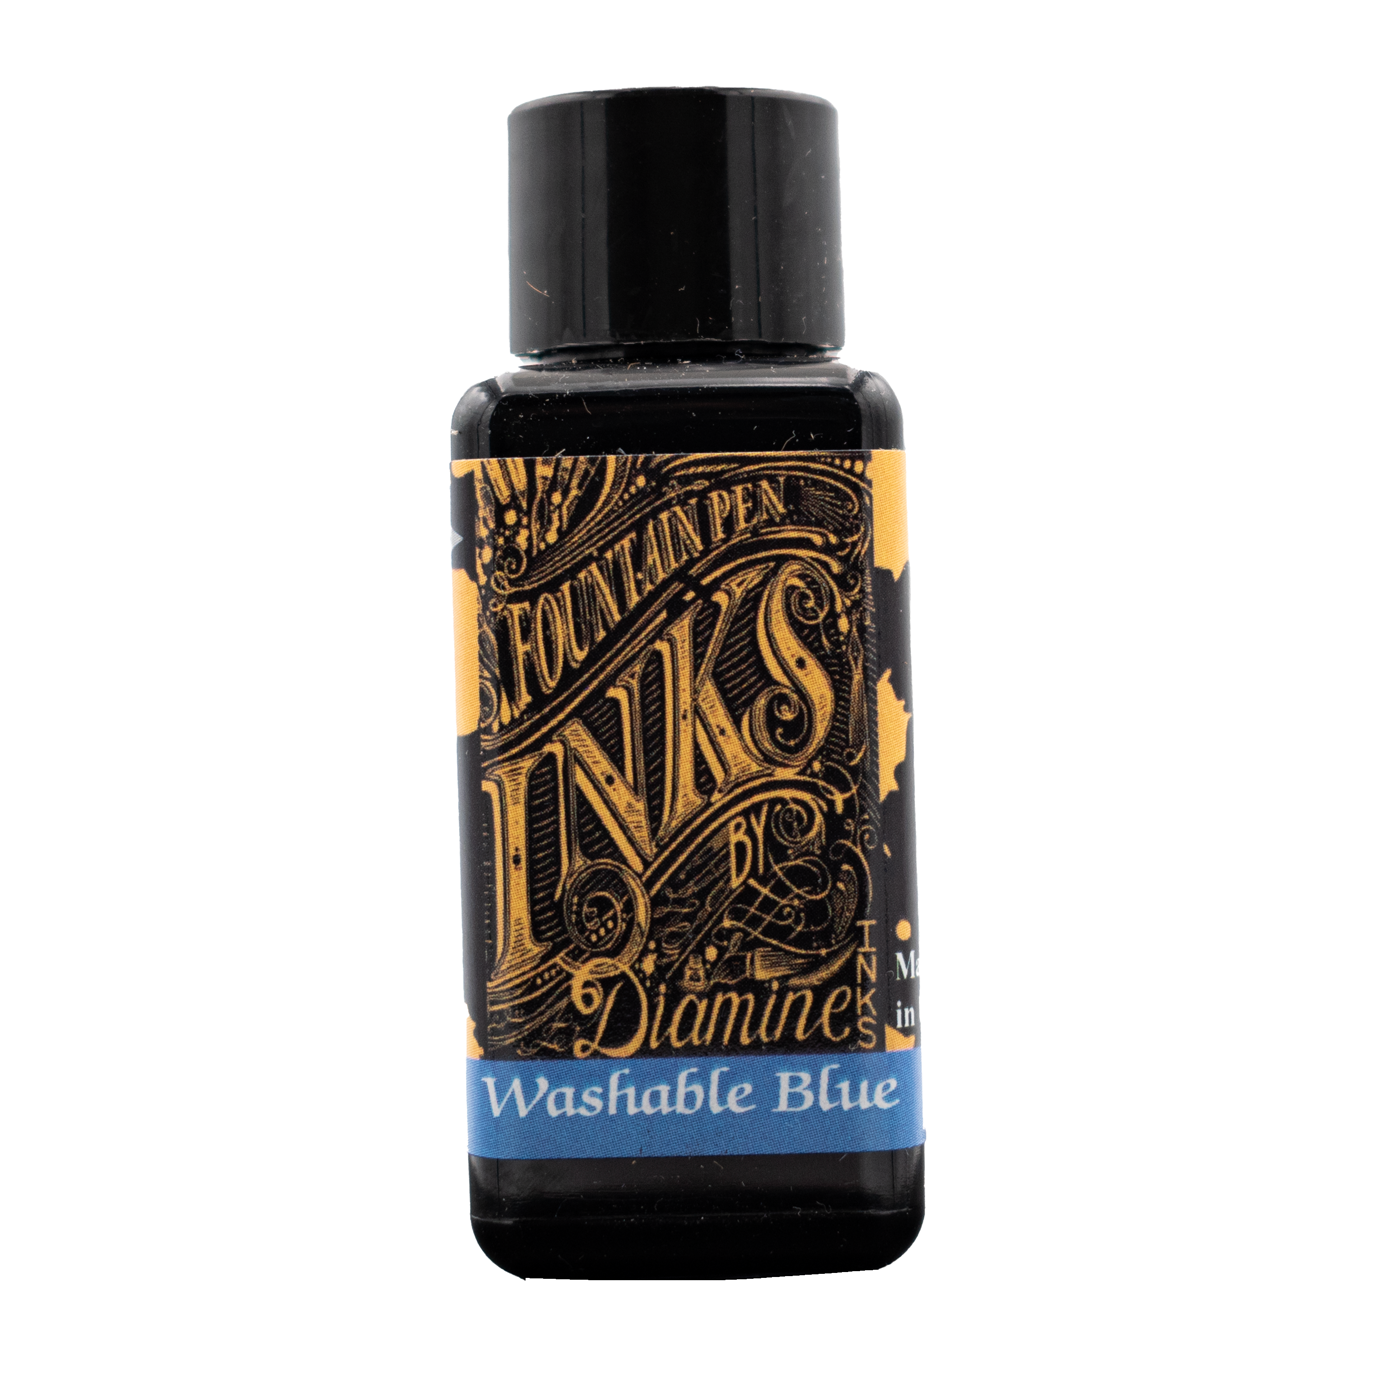 Diamine Washable Blue